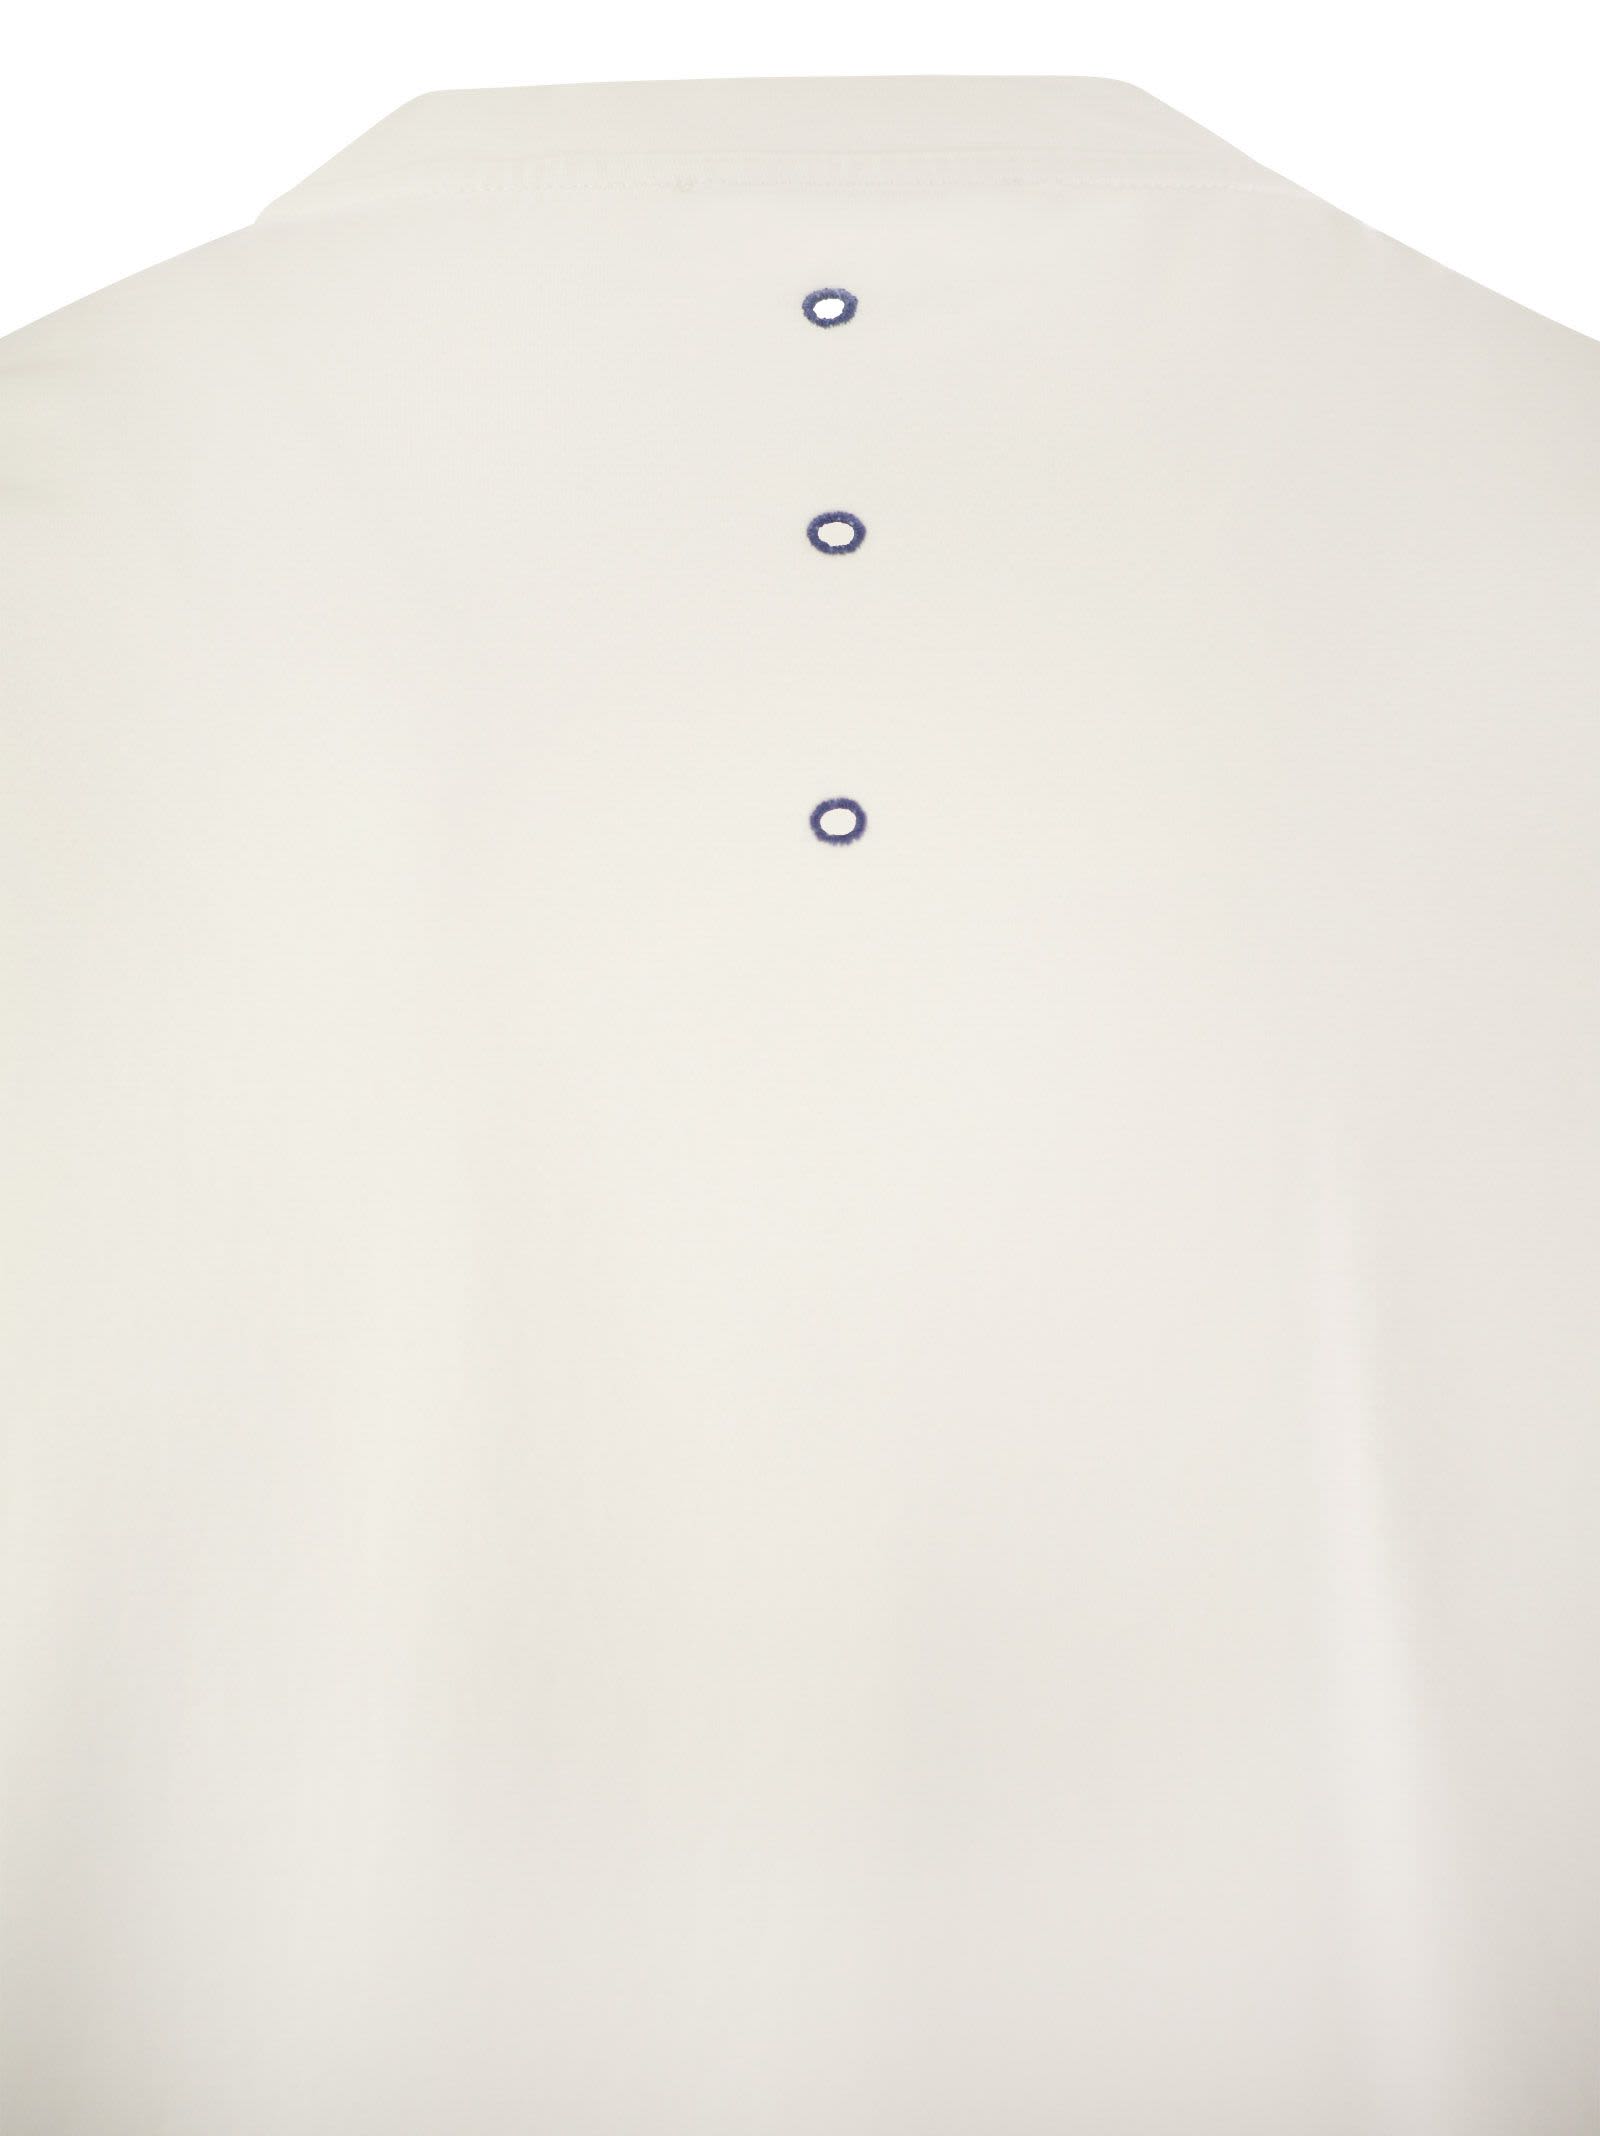 Shop Premiata Cotton Jersey T-shirt In White